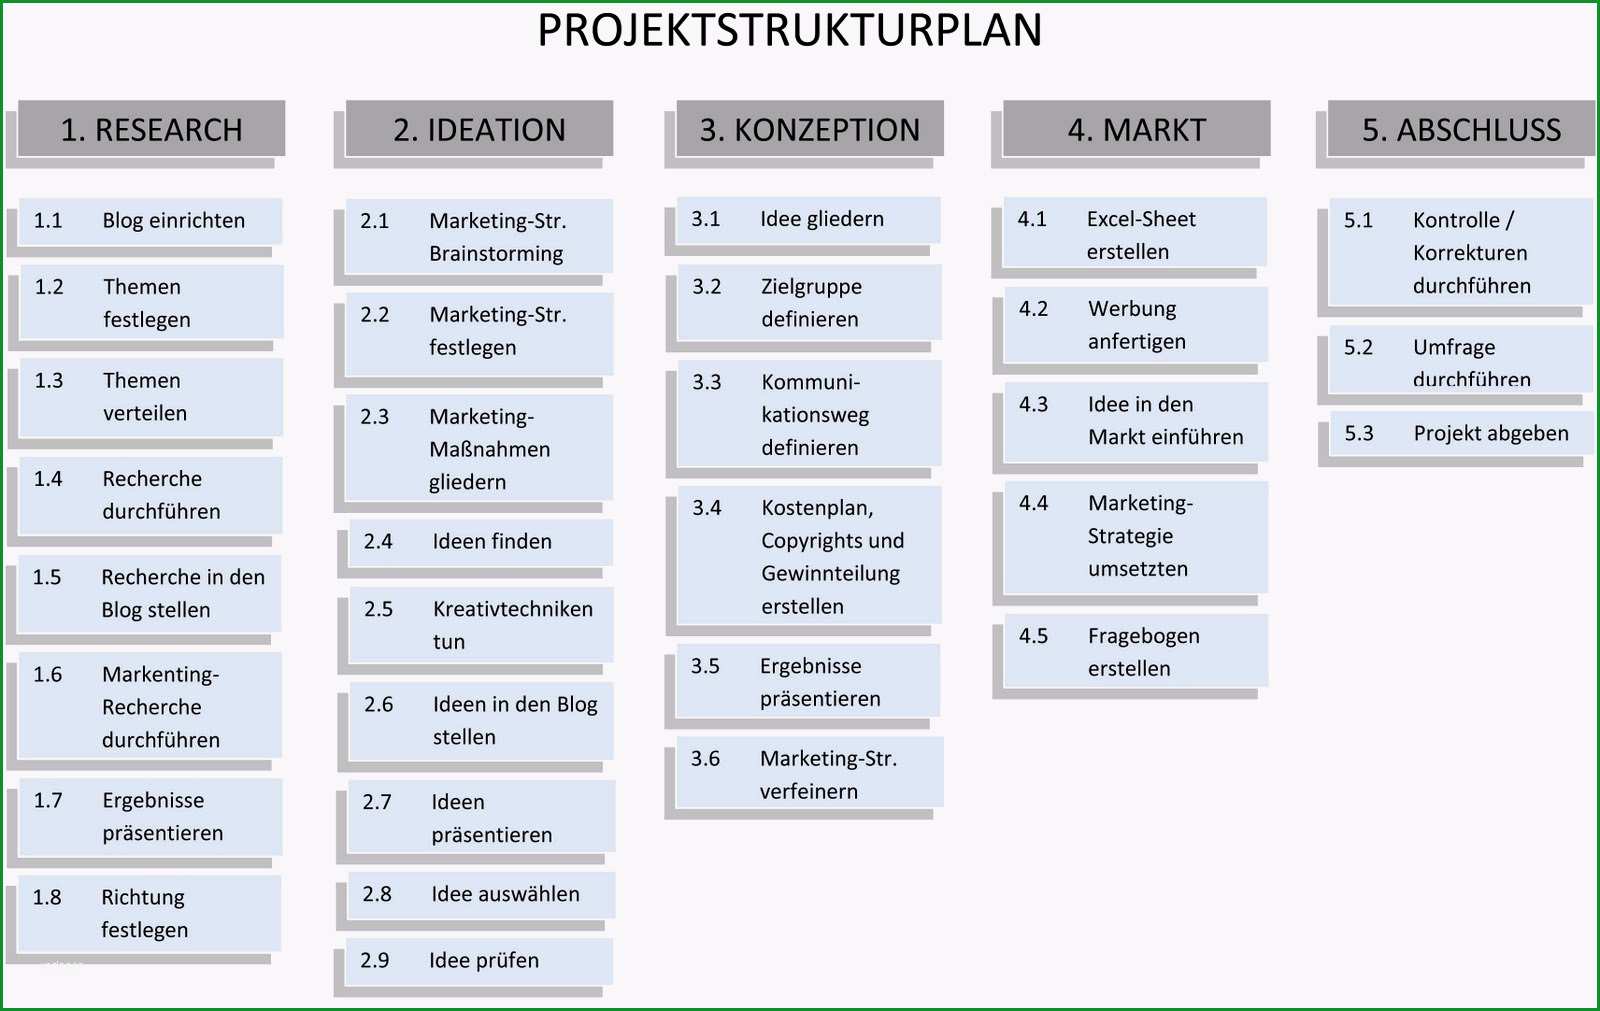 fragebogen im projektstrukturplan